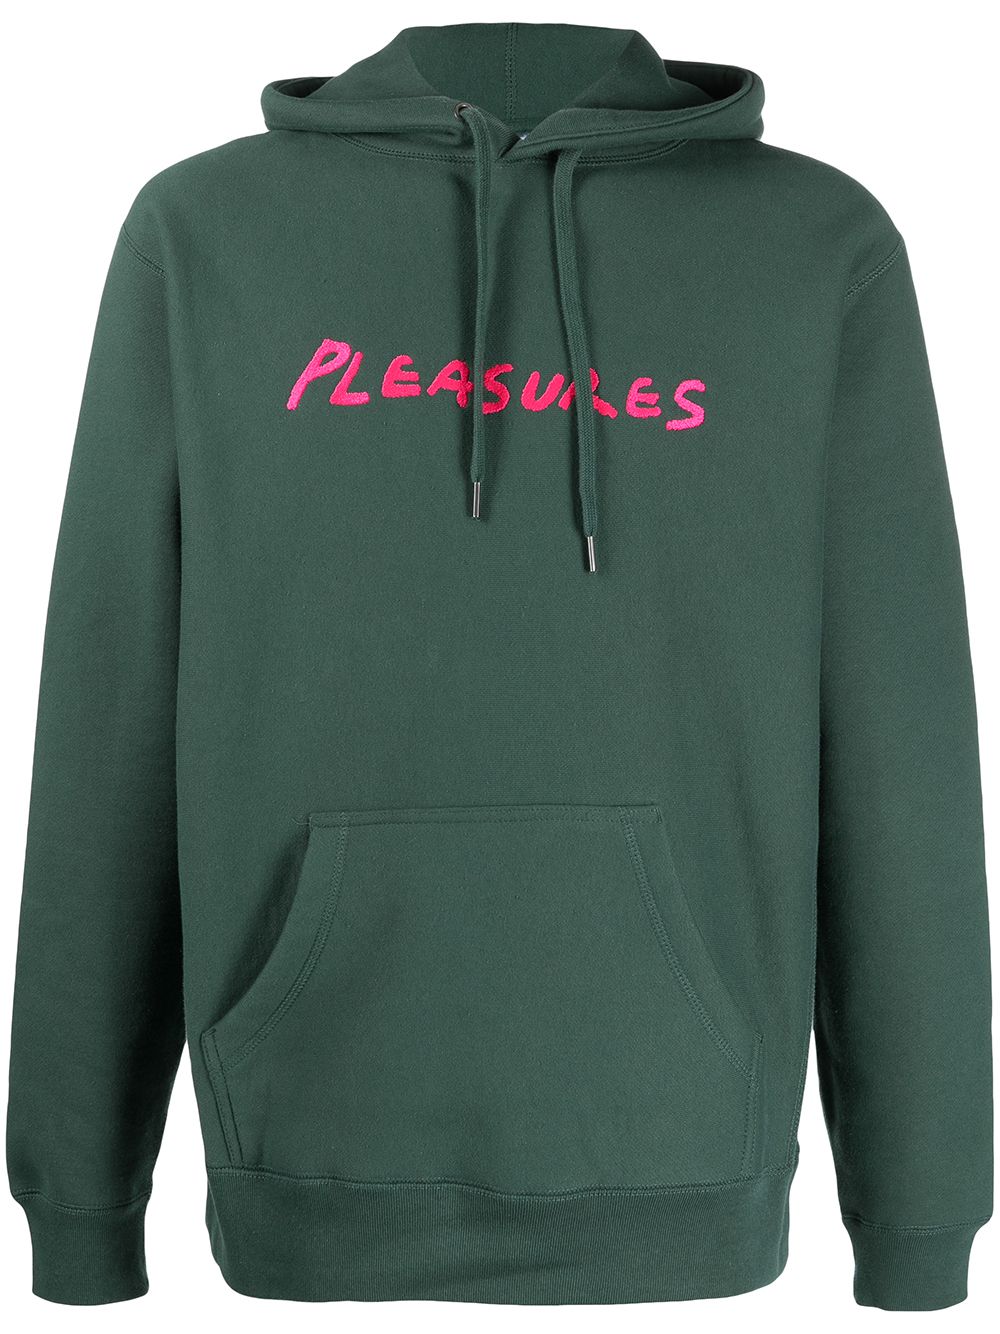 фото Pleasures худи с логотипом